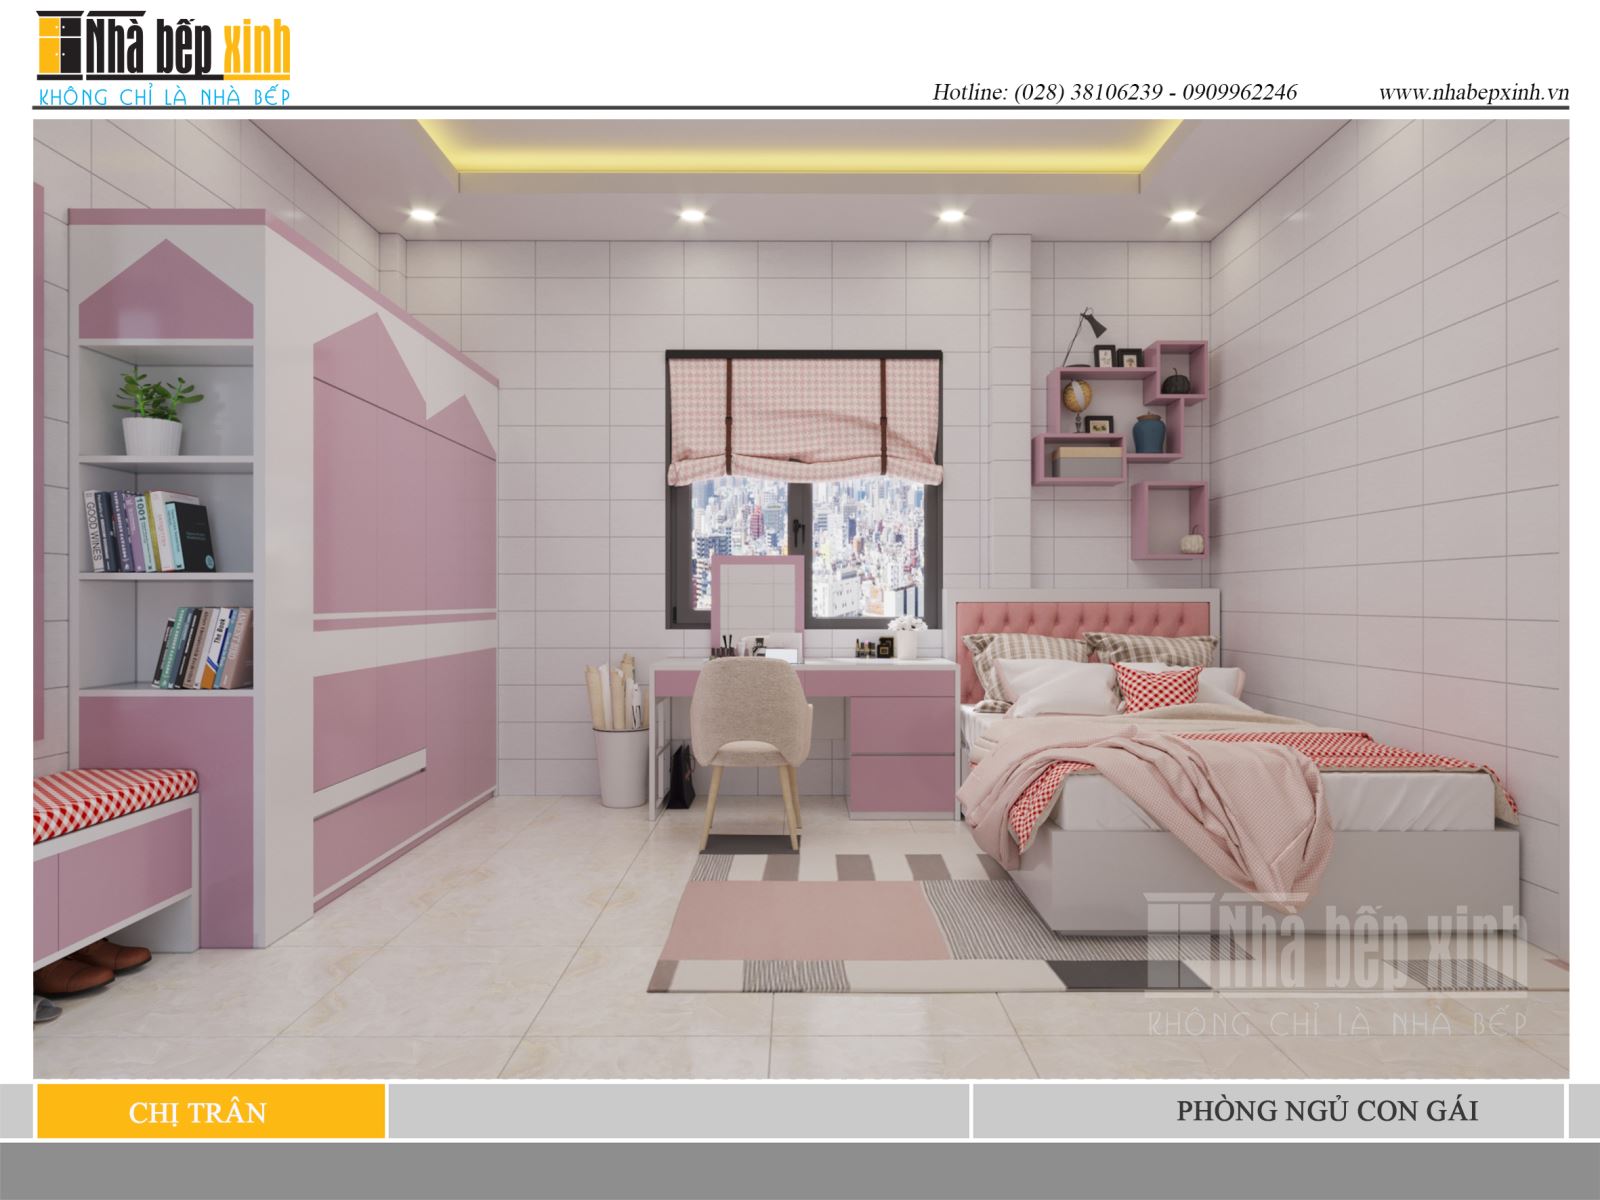 Phòng ngủ màu hồng thiết kế lạ mắt hiện đại